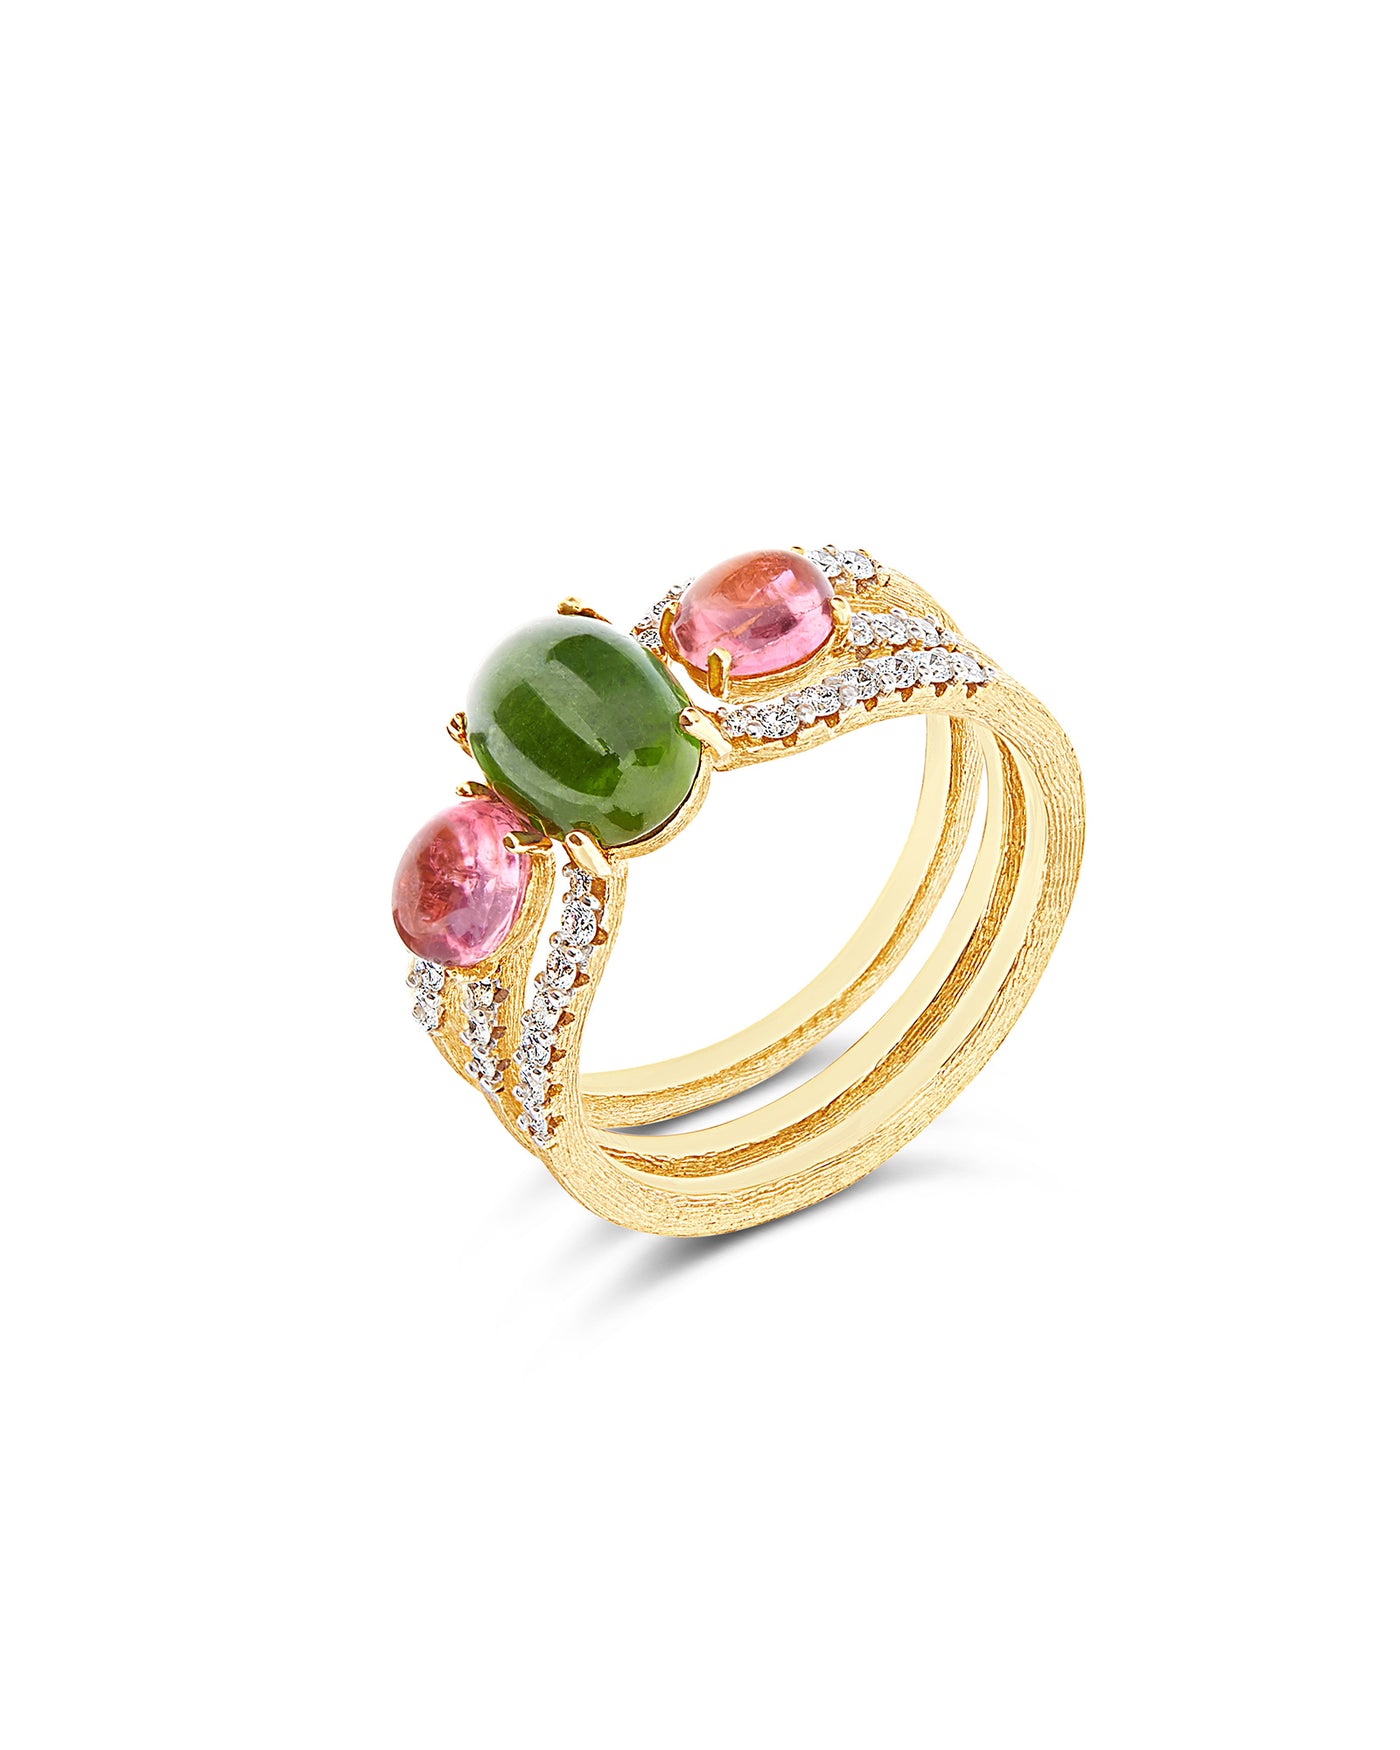 Anello "DANCING TOURMALINES" scomponibile in oro, diamanti, tormaline rosa e verdi